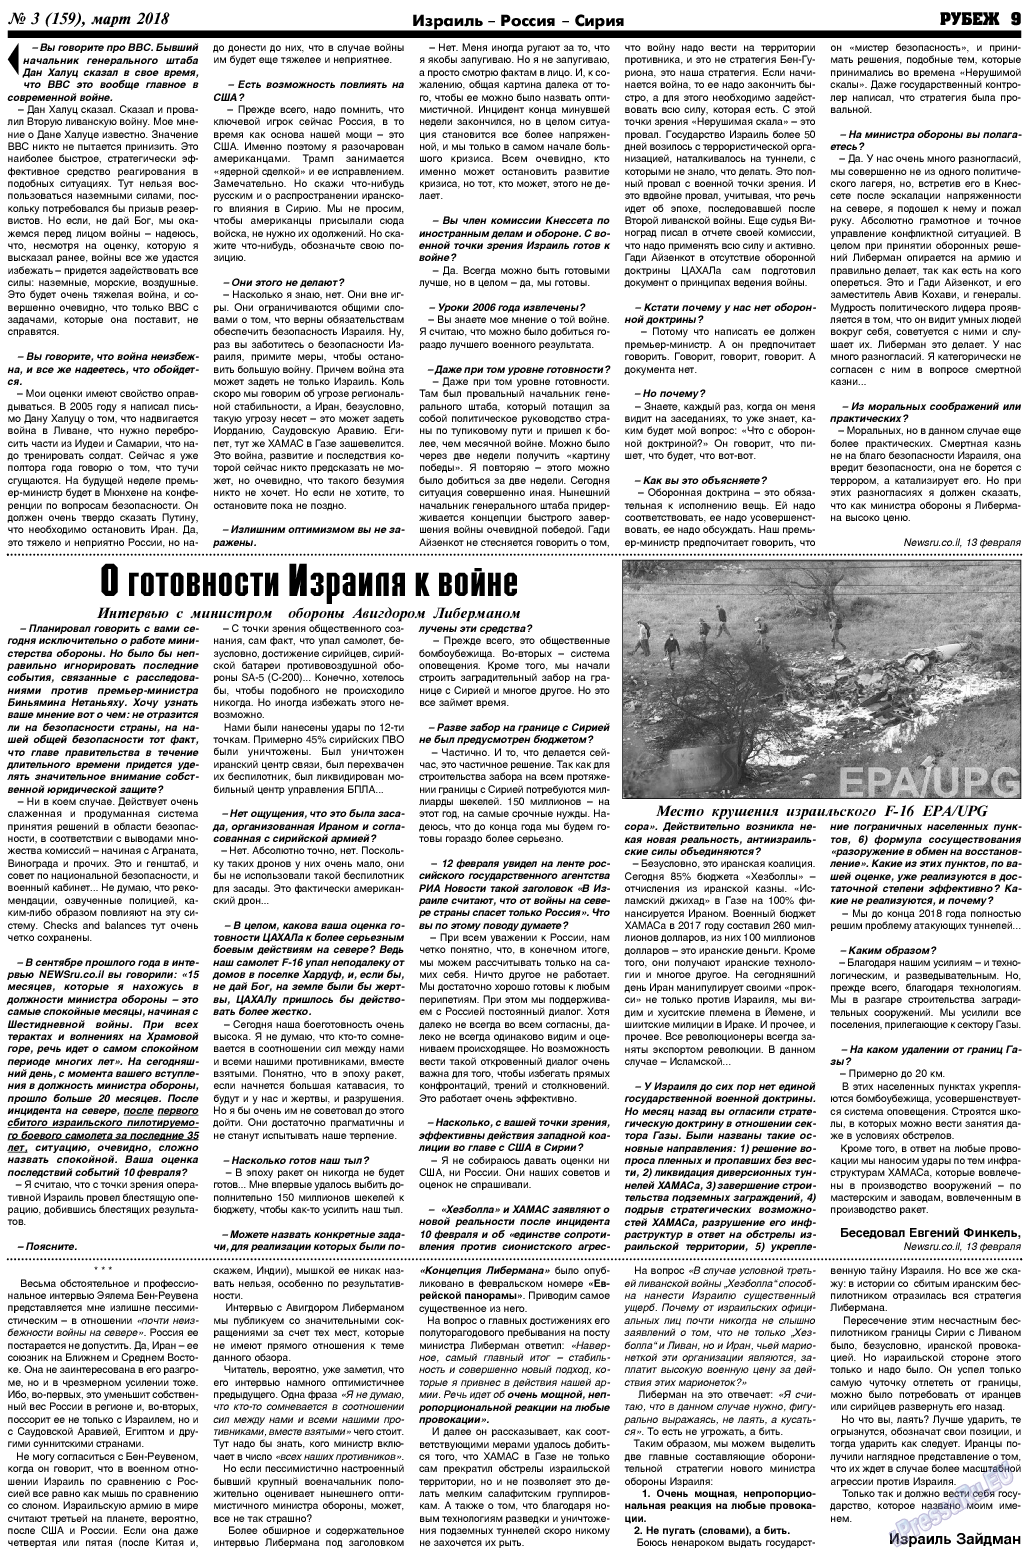 Рубеж (газета). 2018 год, номер 3, стр. 9